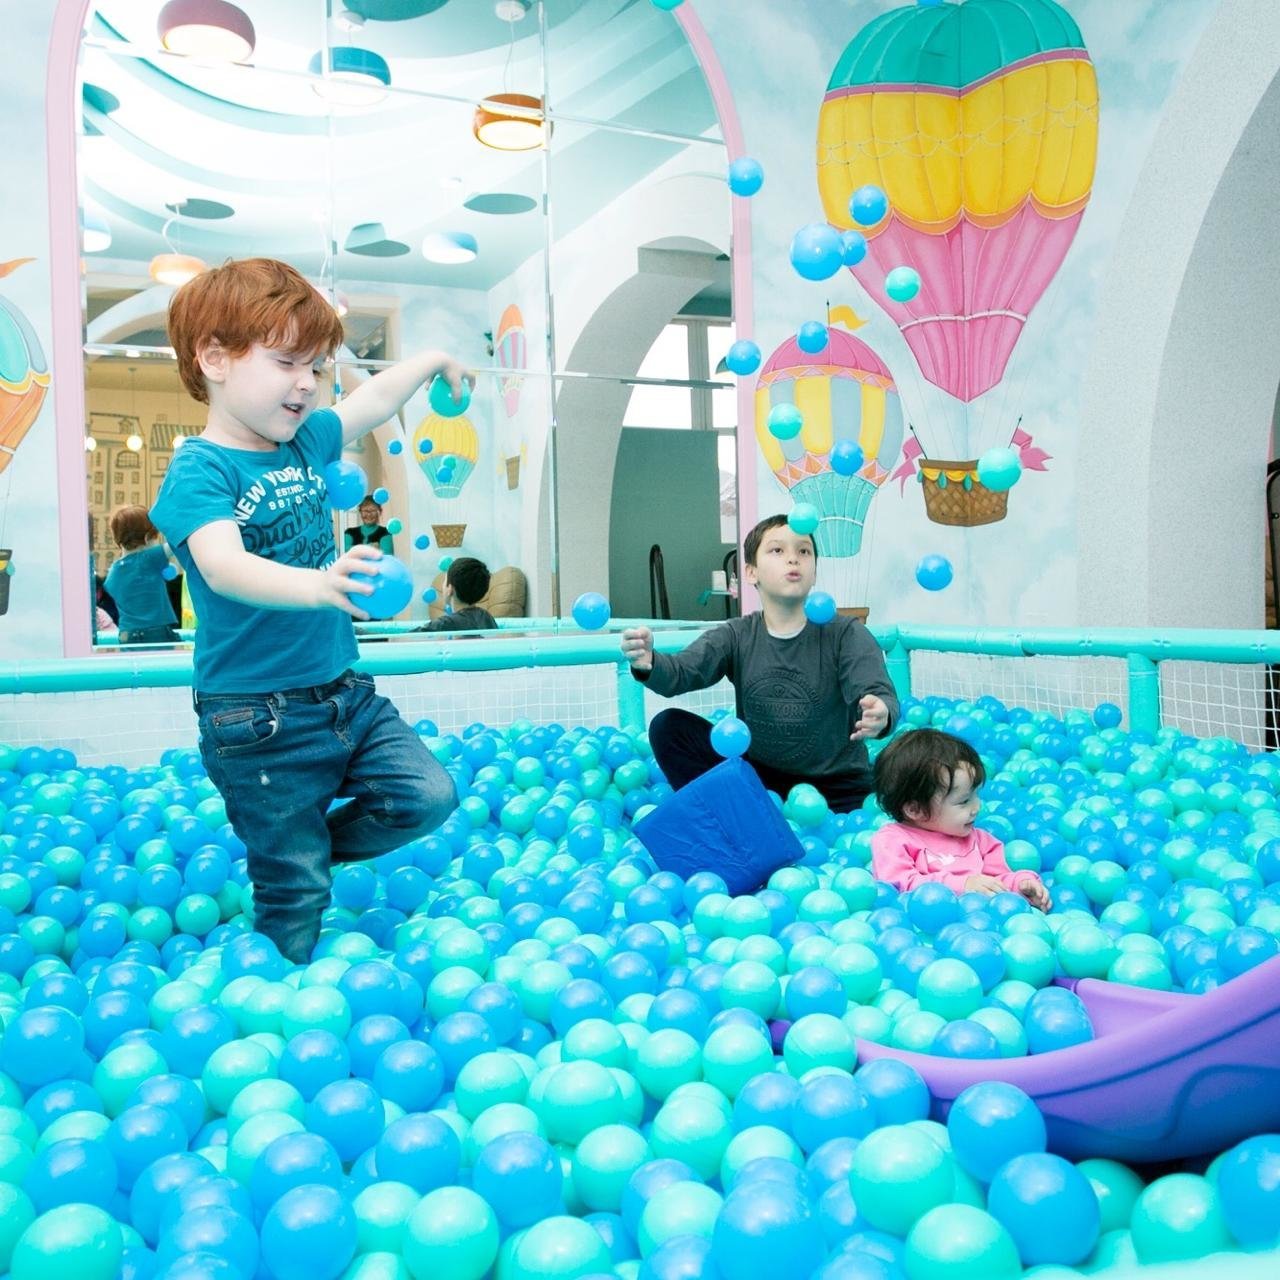 Выходной день куда можно сходить. Развлекательные центры с шарами в воздухе. Куда можно сходить на день рождения. Развлечения для детей 11 лет Астана. Одежда для фотосессии в развлекательном центре.